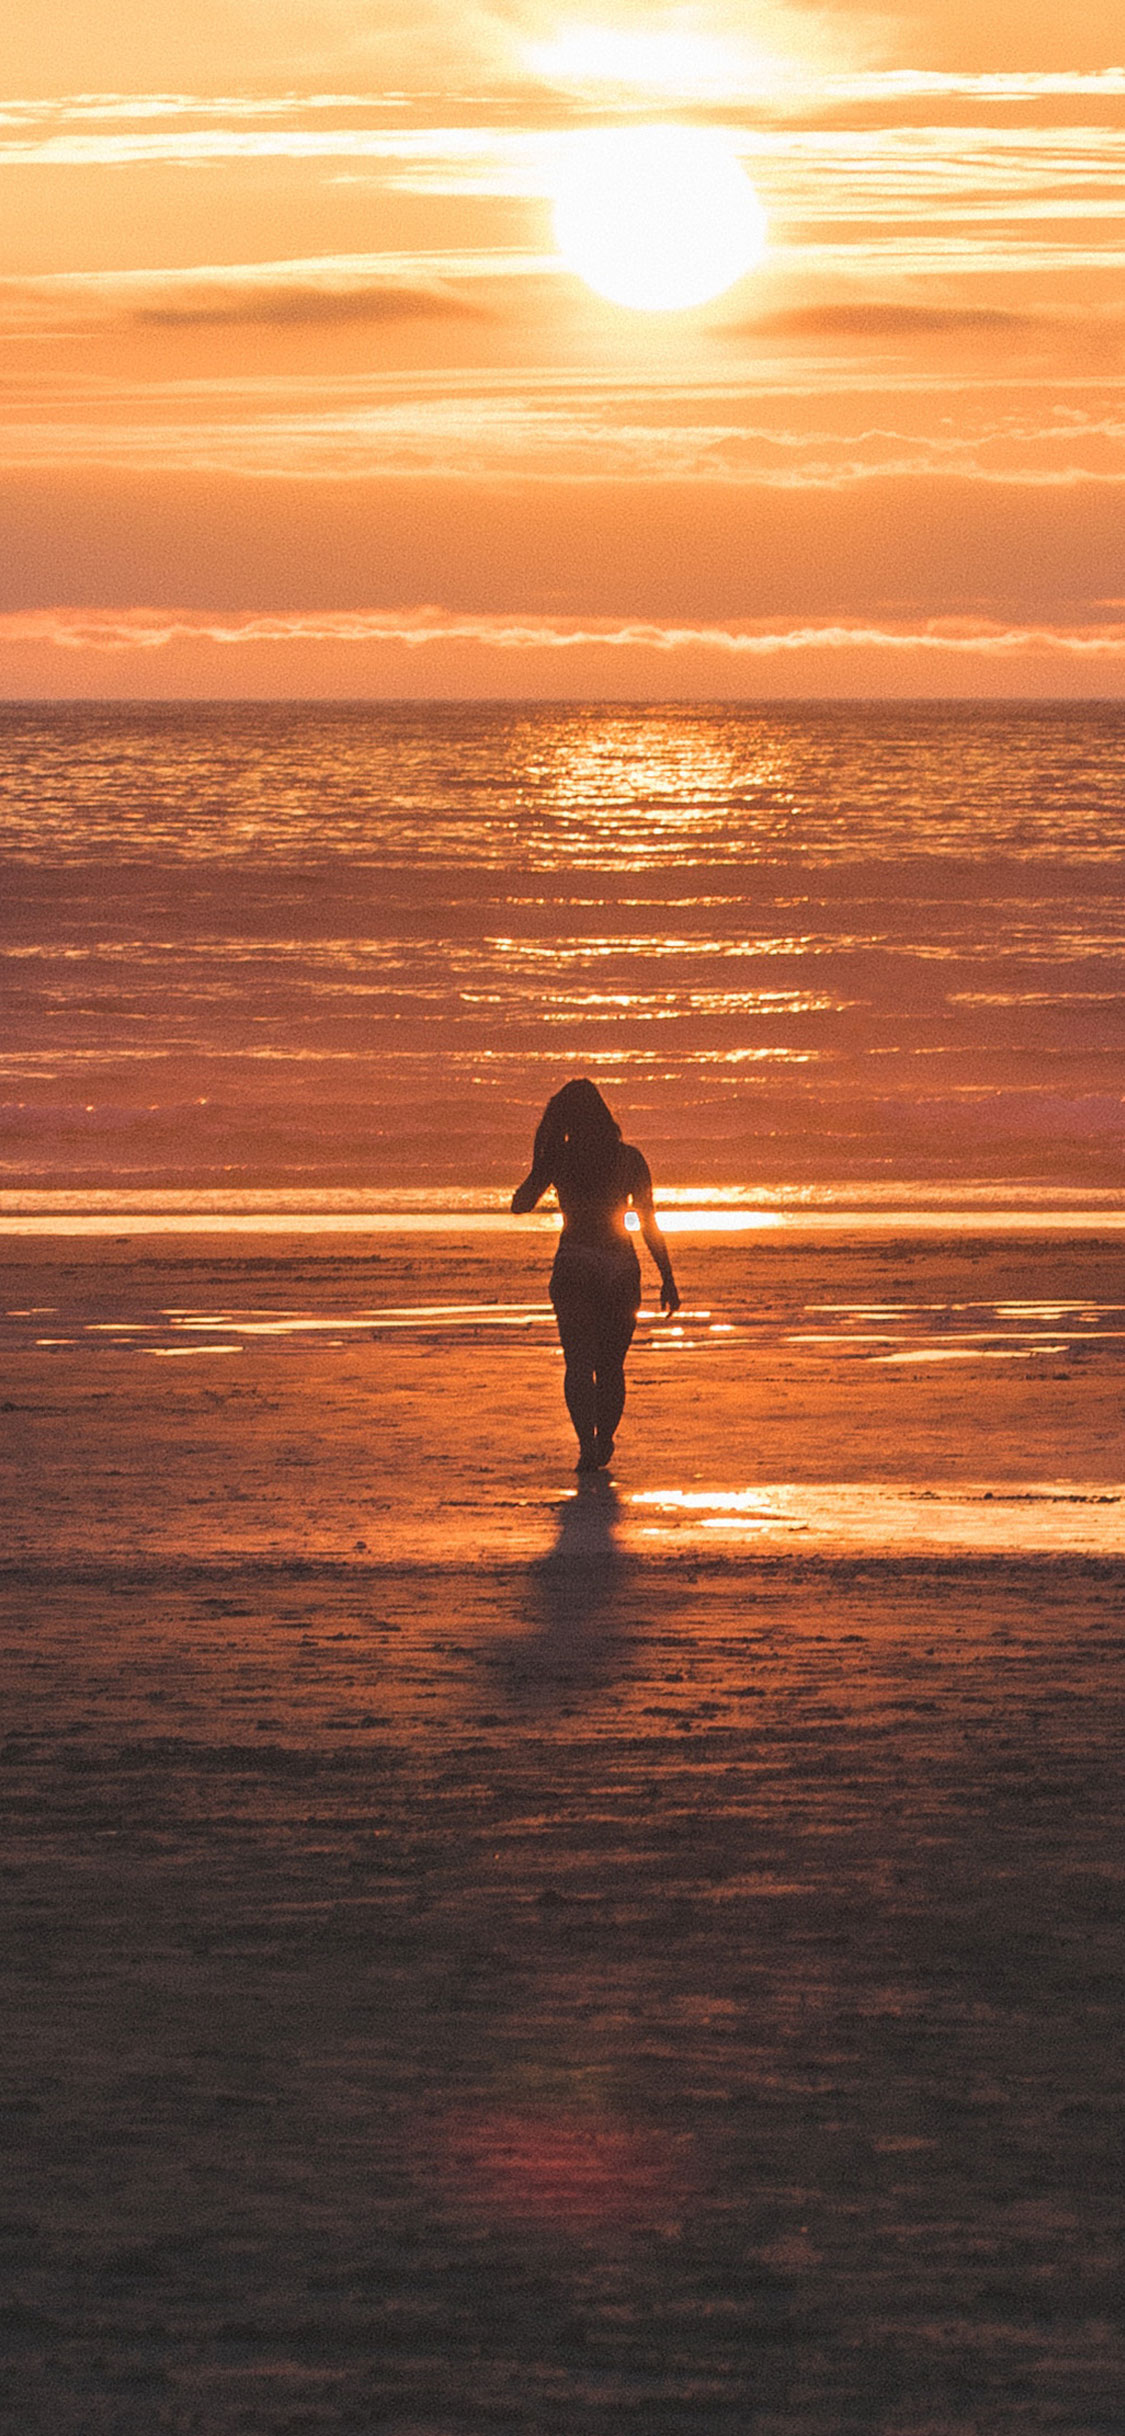 Alone Girl In Beach - HD Wallpaper 